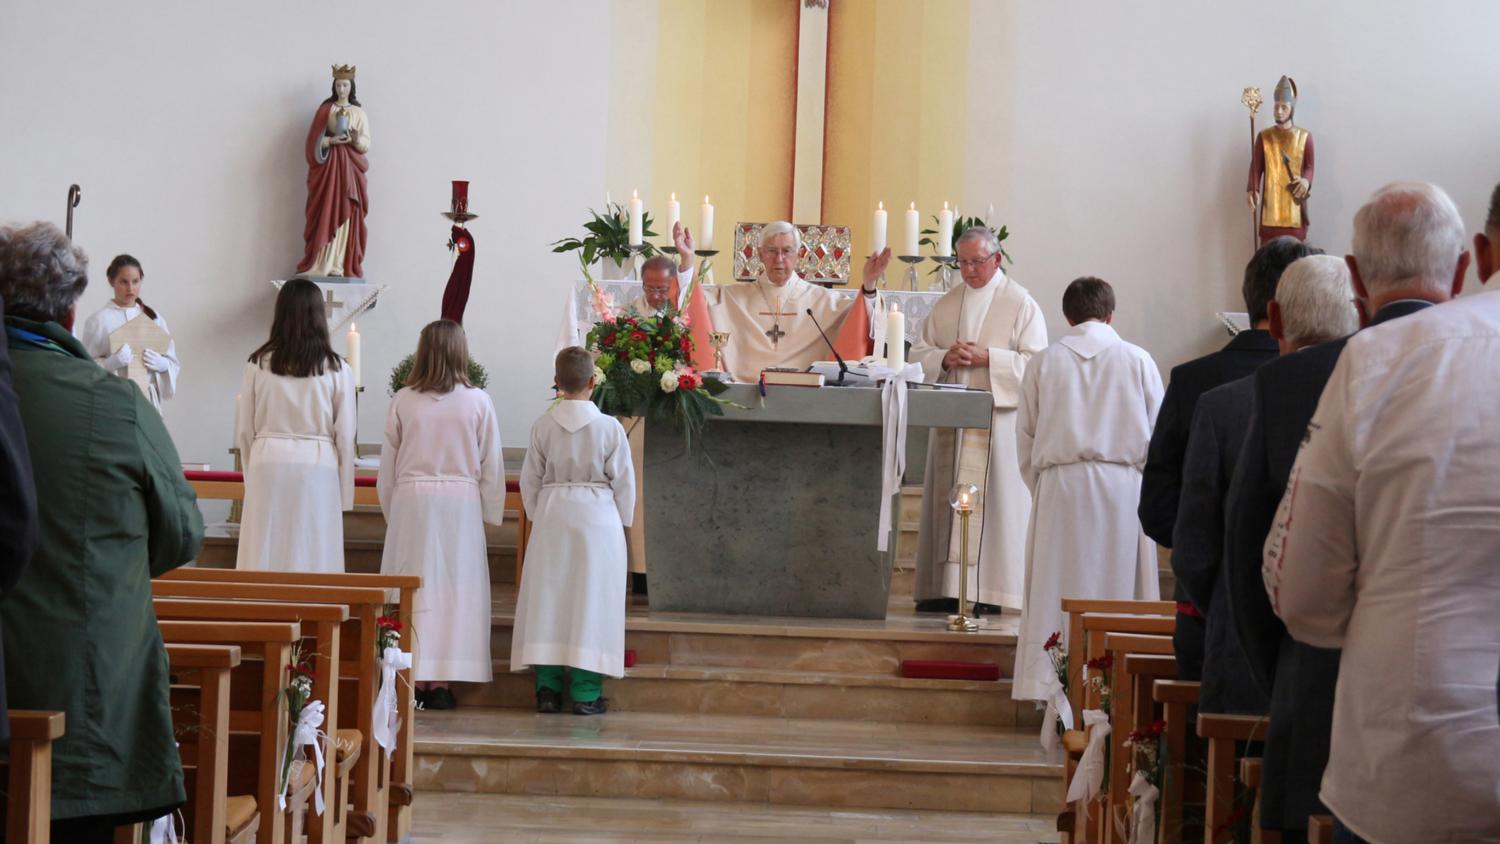 Gerne lässt sich der Weihbischof zu Festtagen einladen. In Welz feierte er den 50. Weihetag der Kirche mit den Gläubigen in einer Messe. (c) Foto: Dorothée Schenk